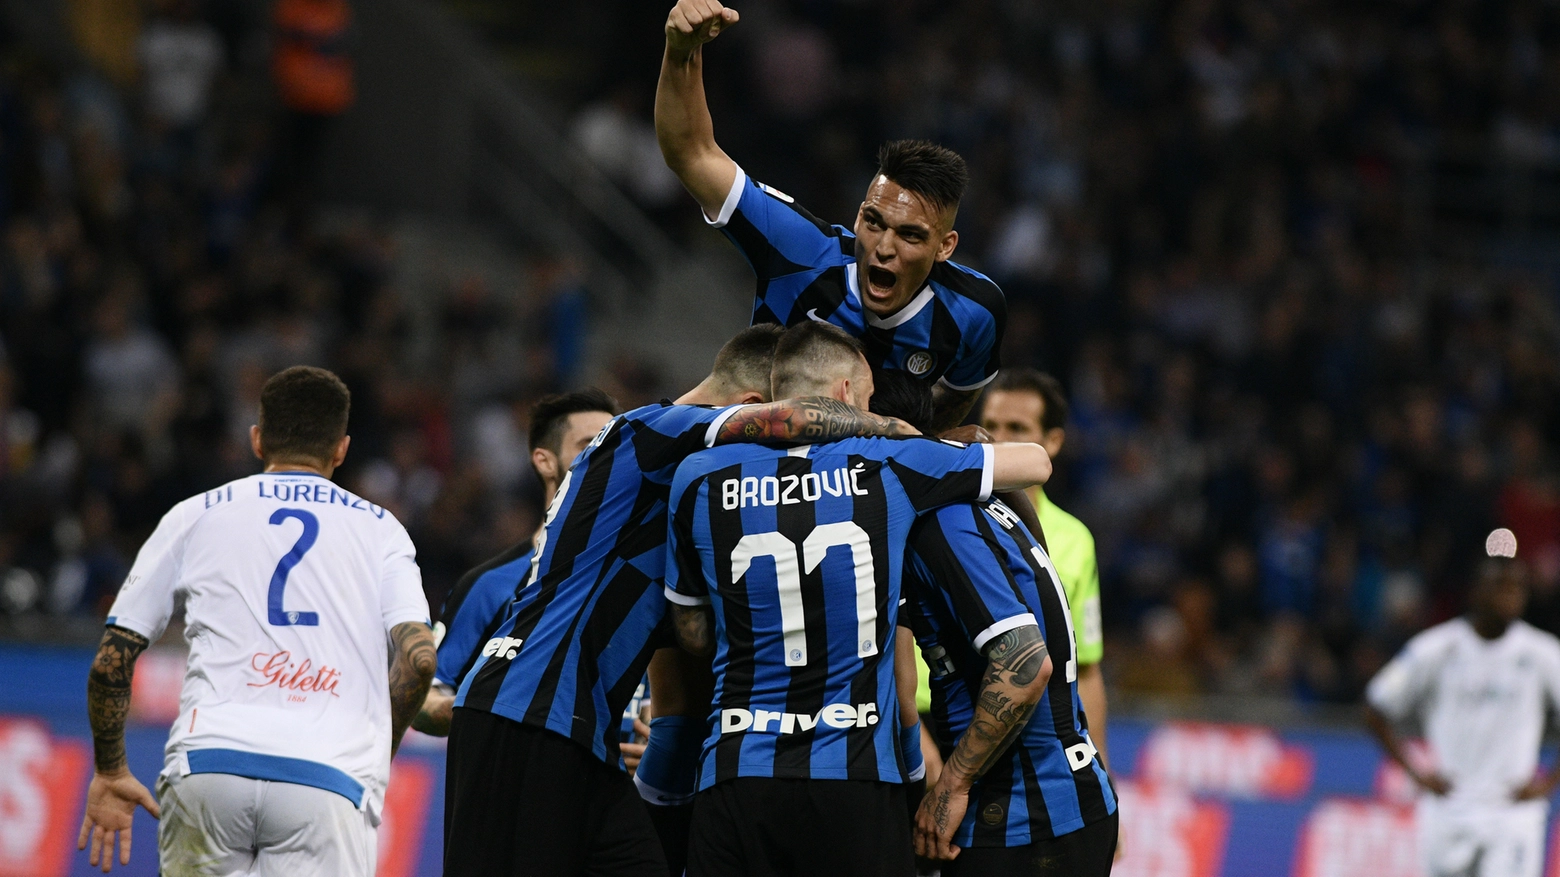 L'Inter va in Champions dopo una partita incredibile